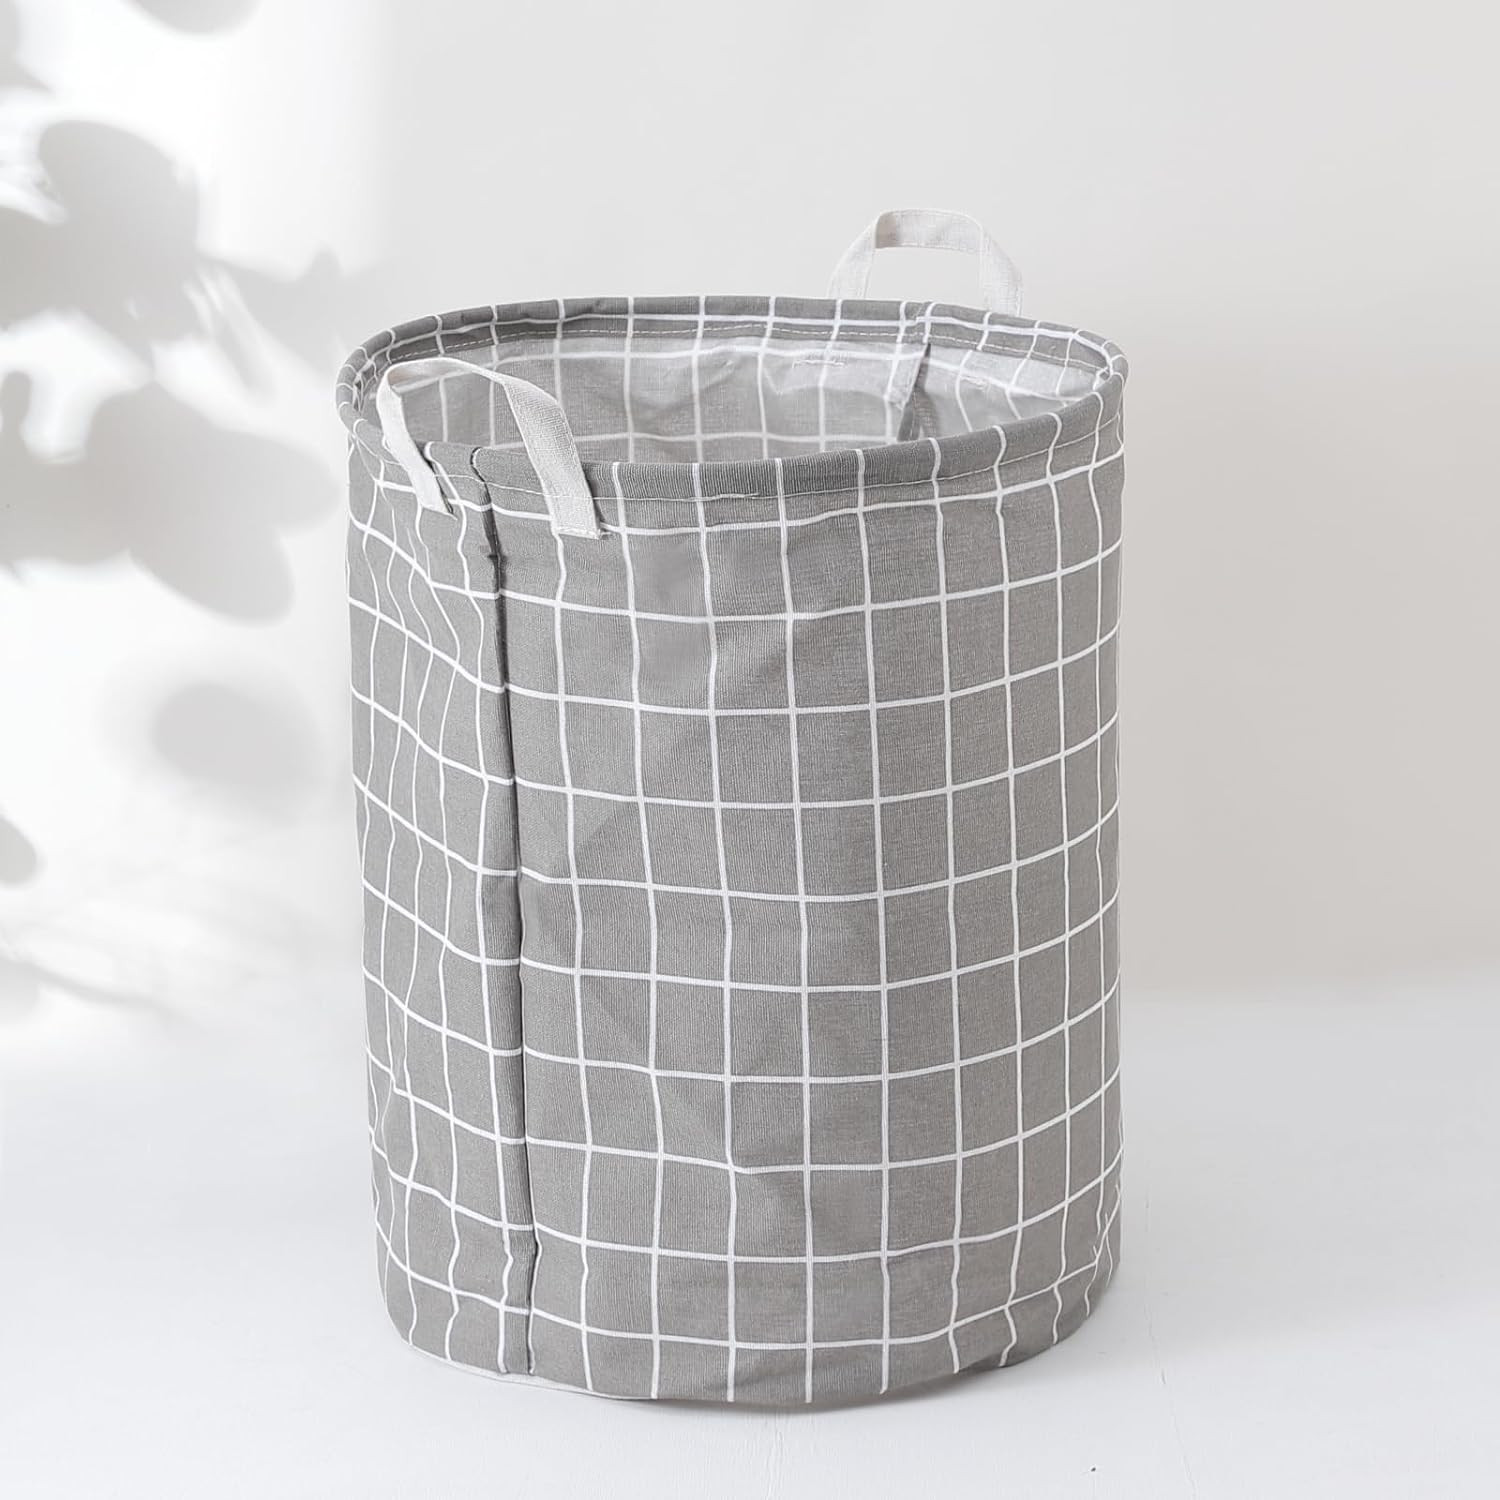 Kuber Industries Foldable Storage Basket|Round Toy Storage Bin|Side Grab Handle|Wardrobe, Closet Organizer (Grey)